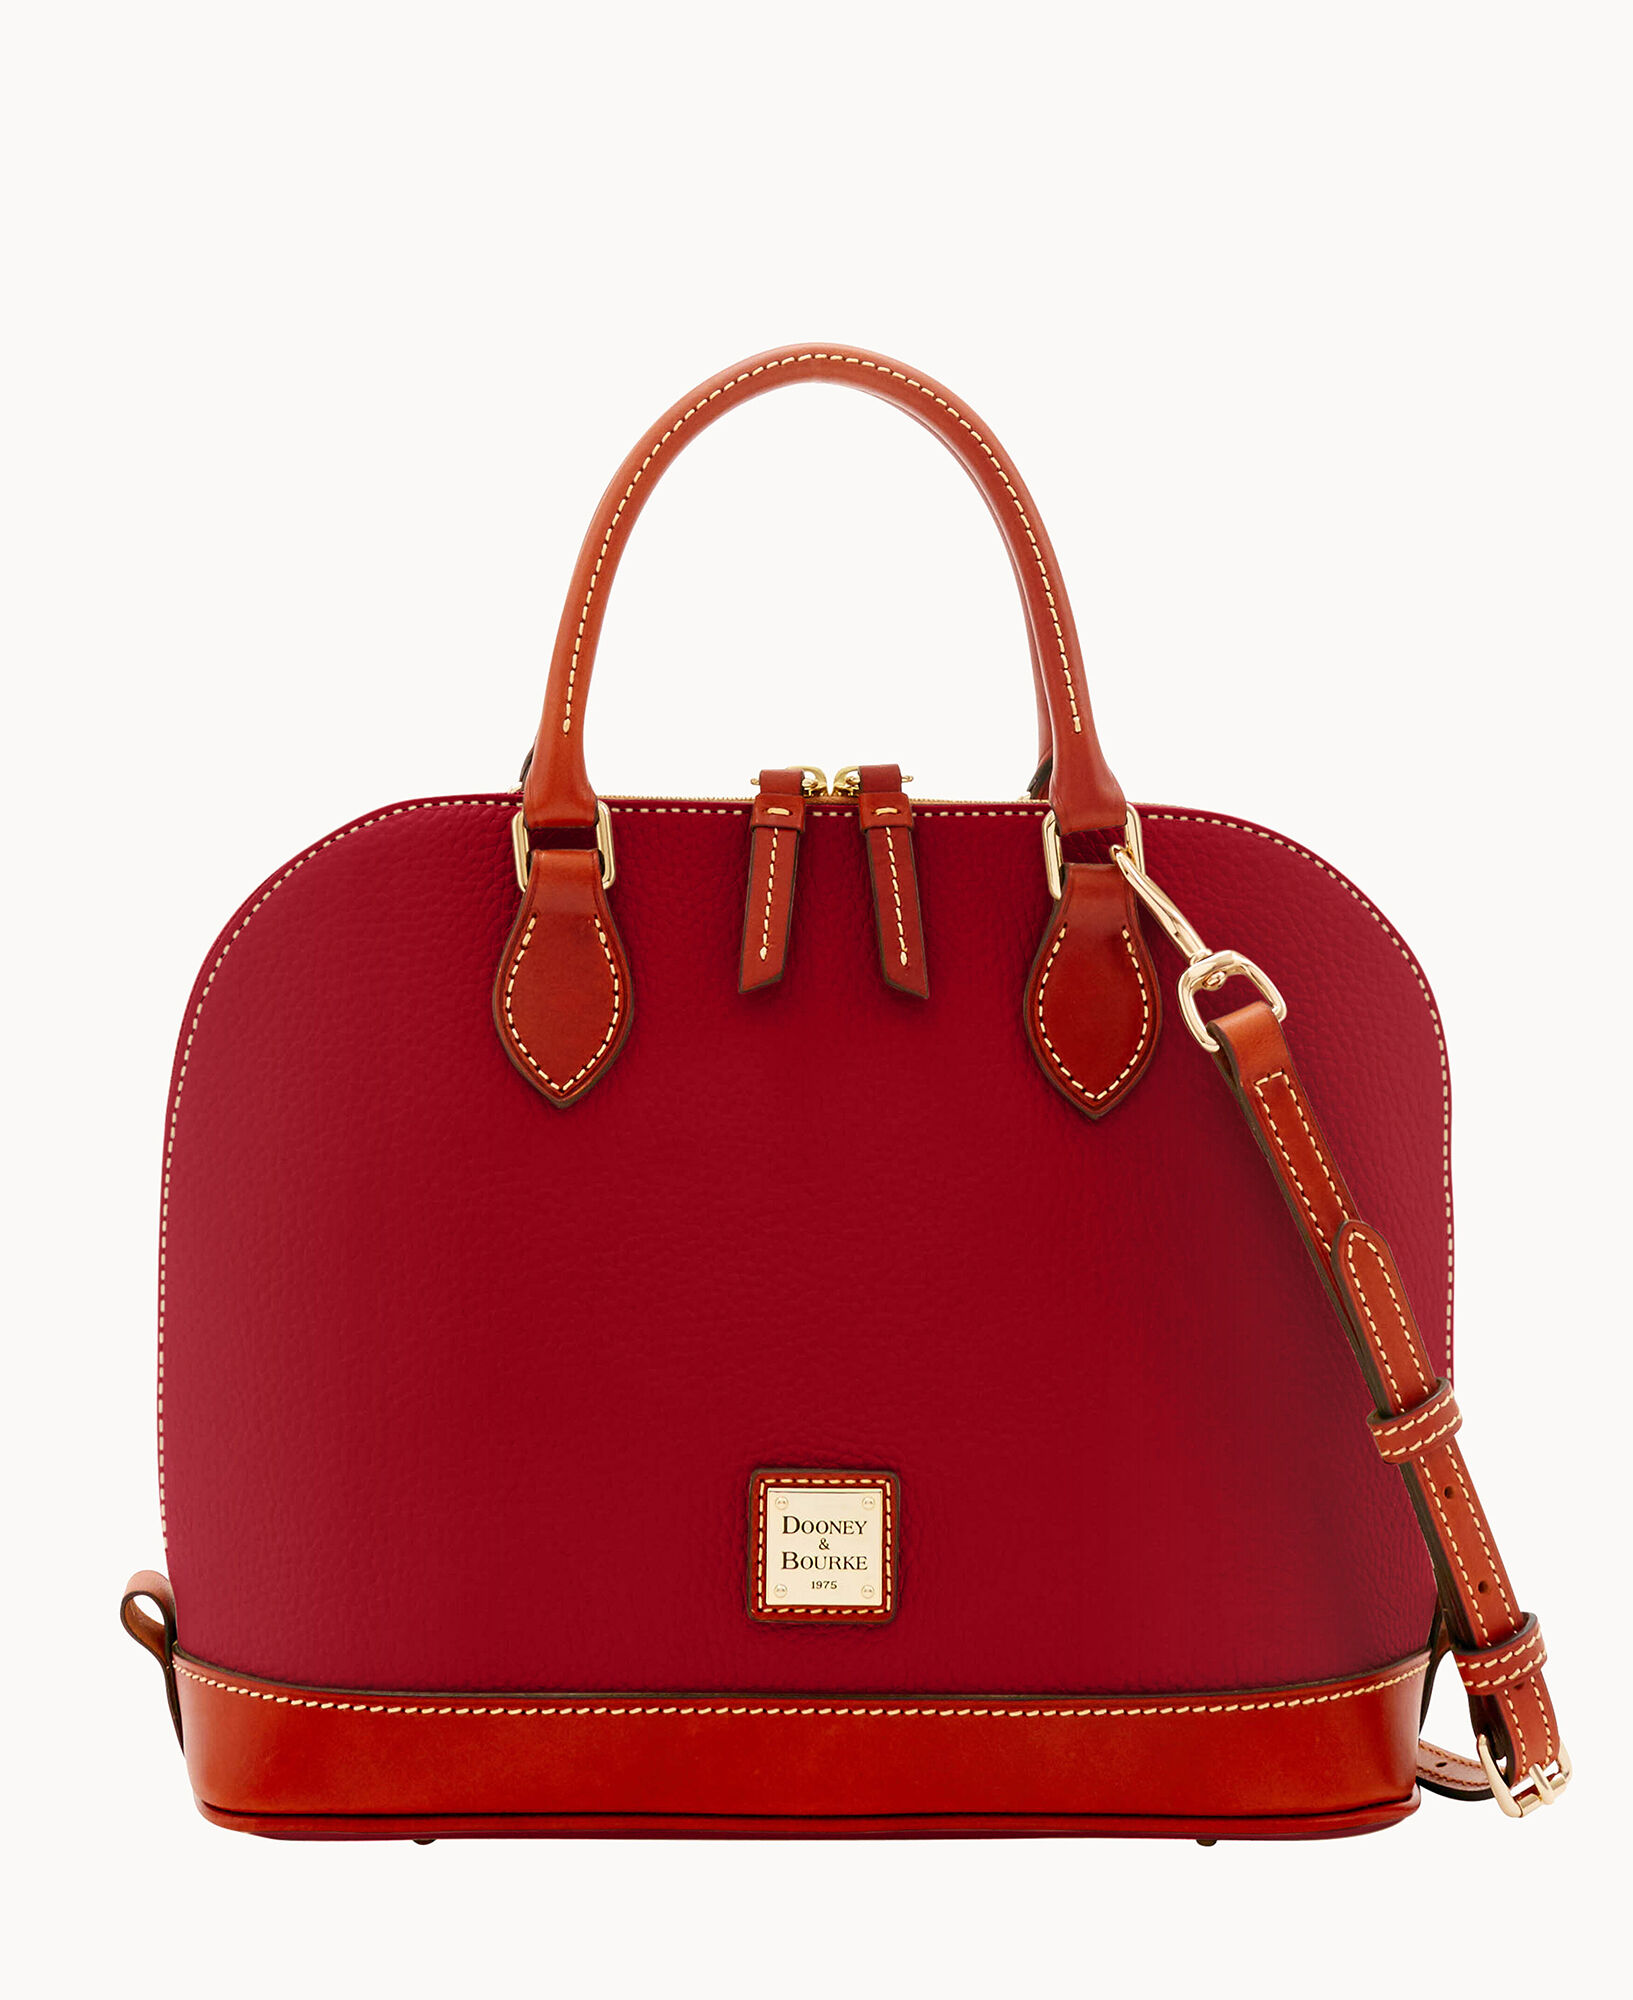 Dooney & Bourke Red Bucket Bags | Mercari